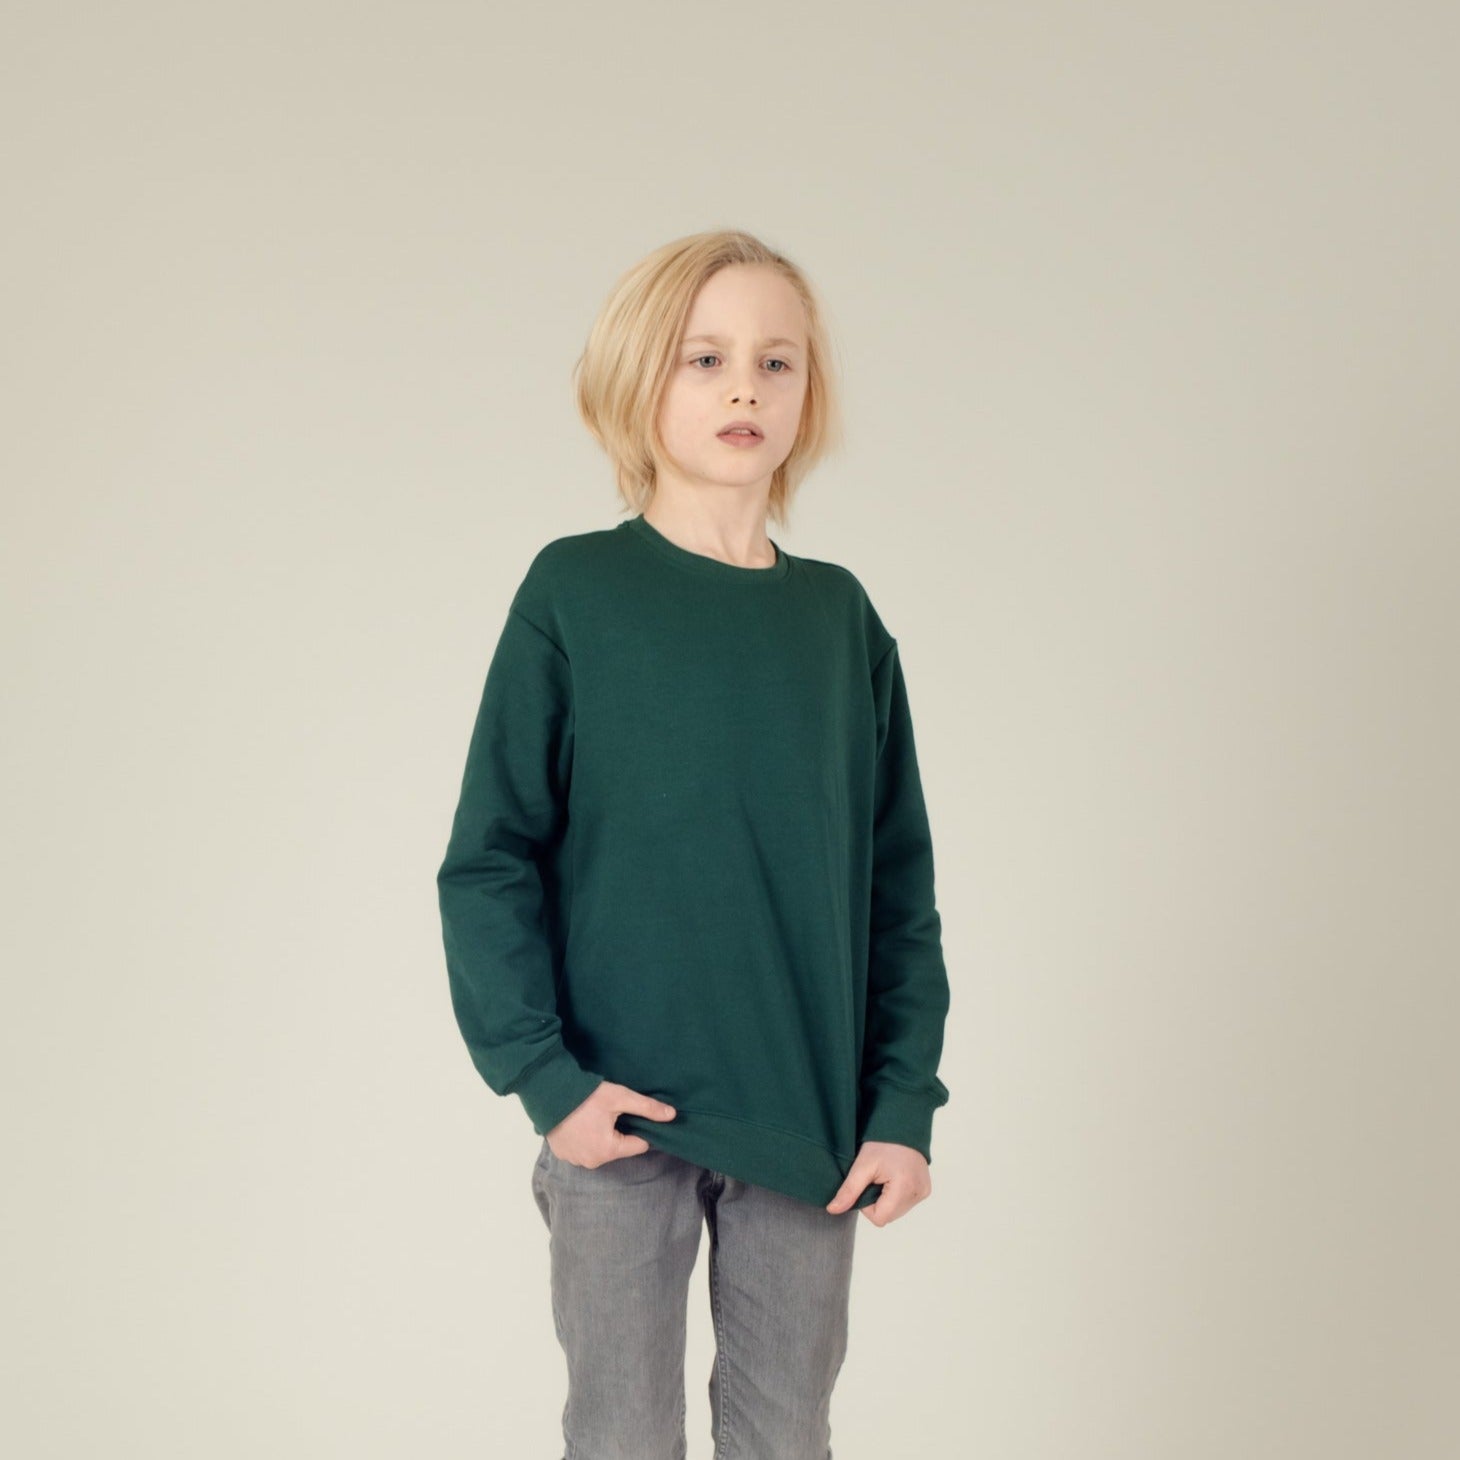 Pulli Baumwoll-Sweater Grün, Junge, Vorderansicht, Urheber: Mini & Eve